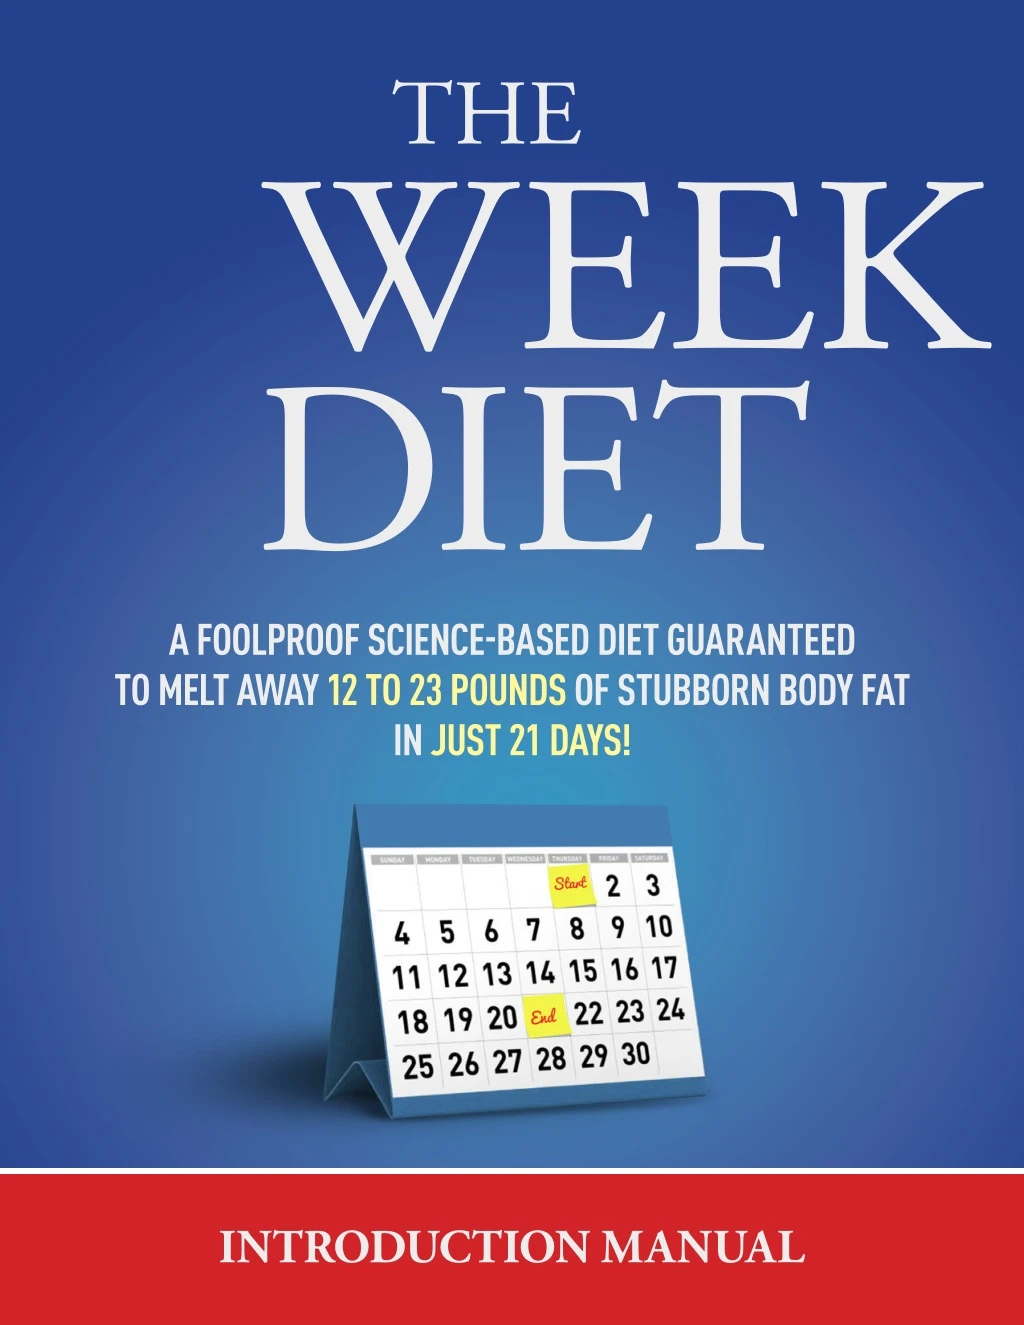 diet 3 week a foolproof scienceebased diet